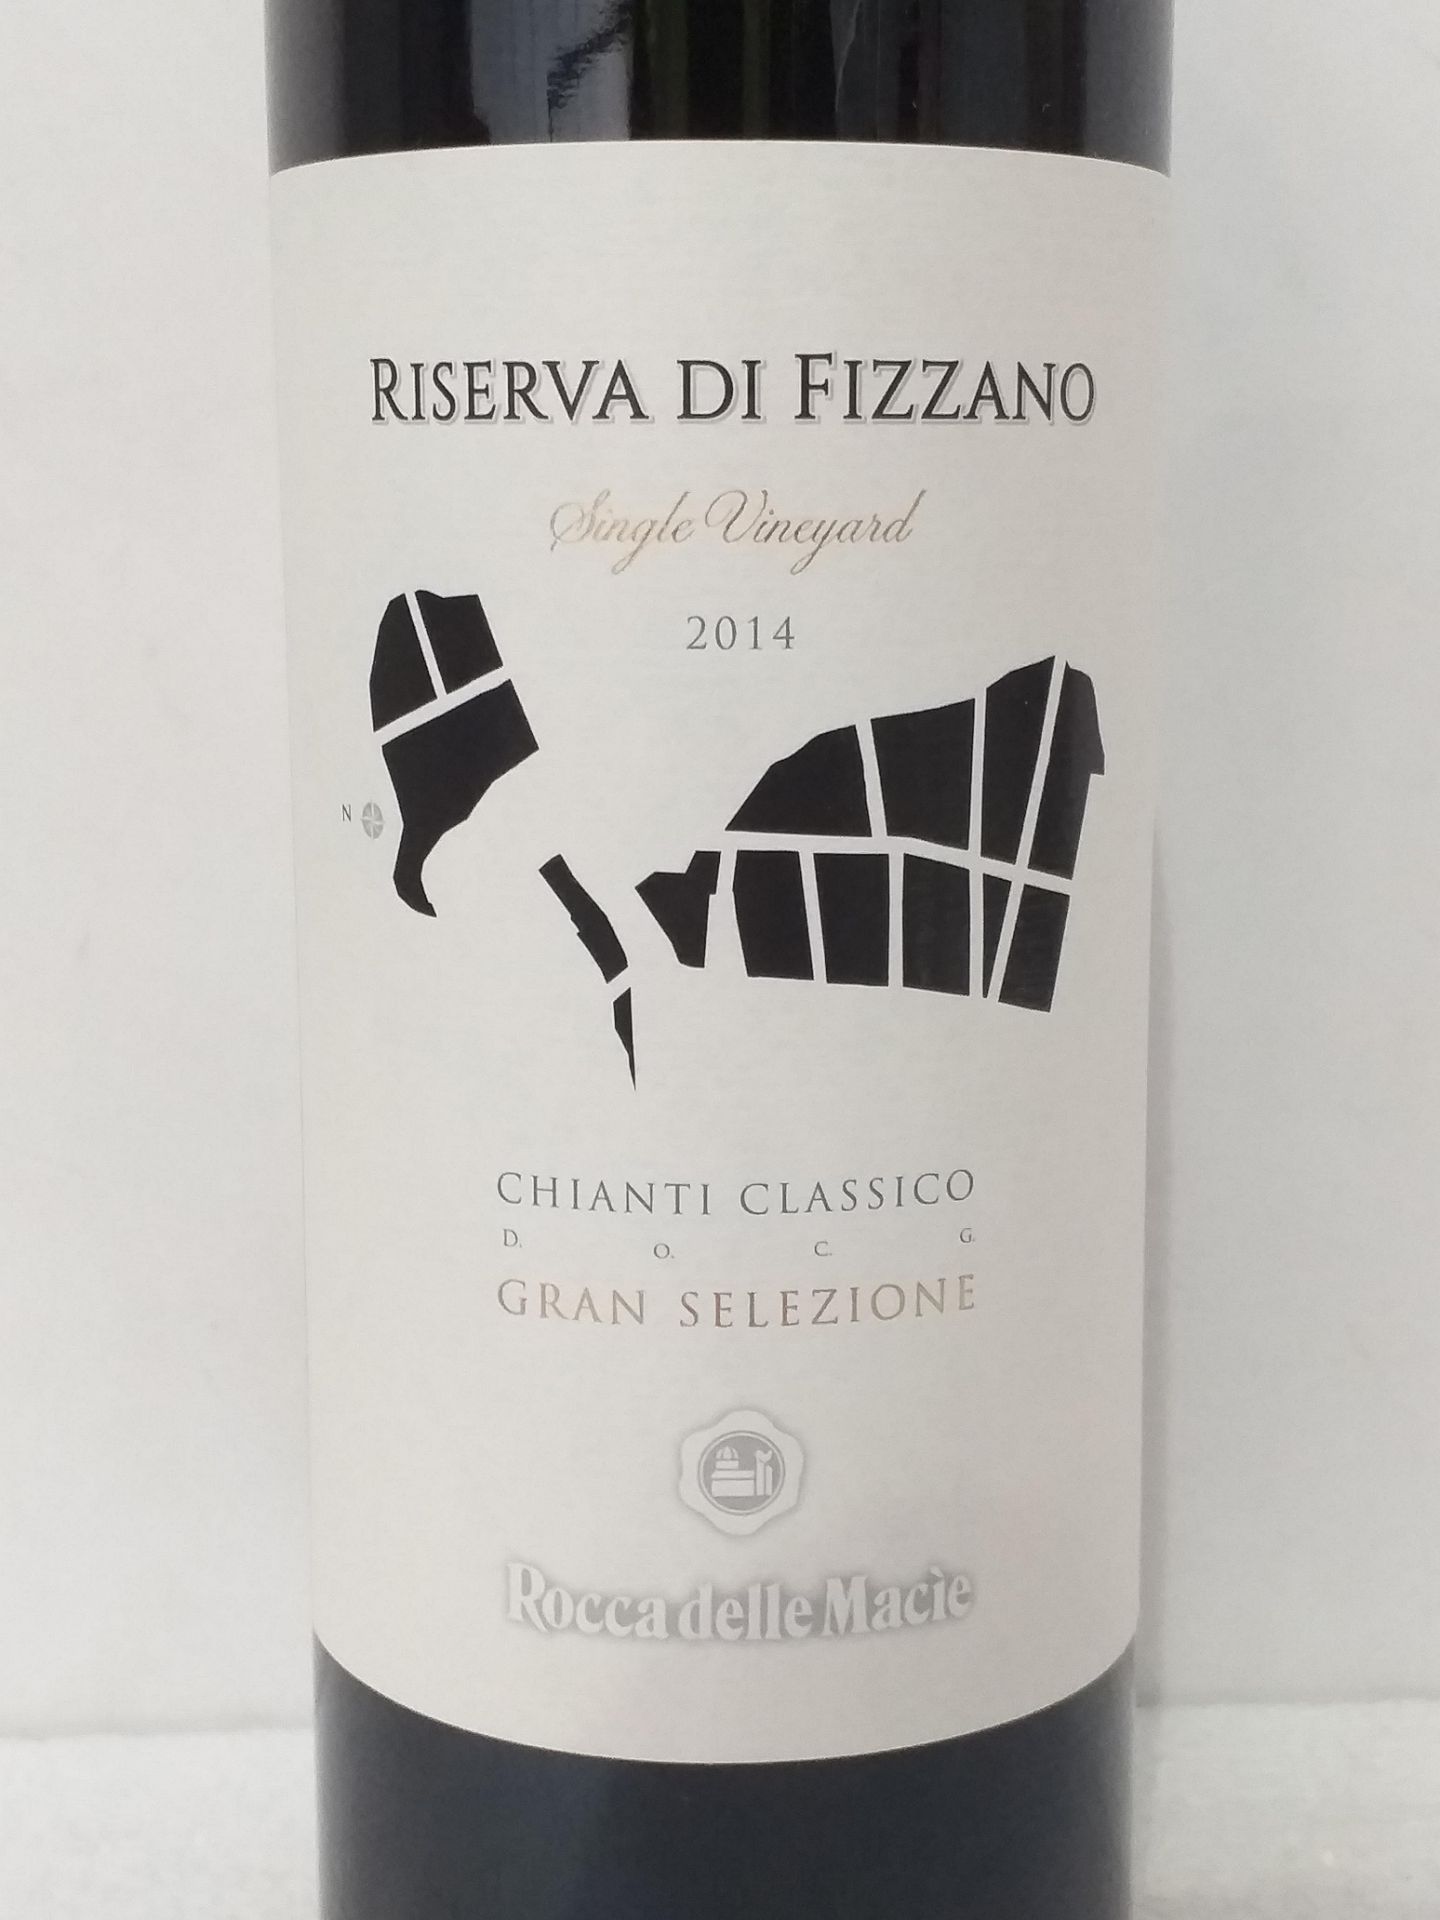 6 Bottles of Chianti Riserva Fizzano 2014 - Image 2 of 3